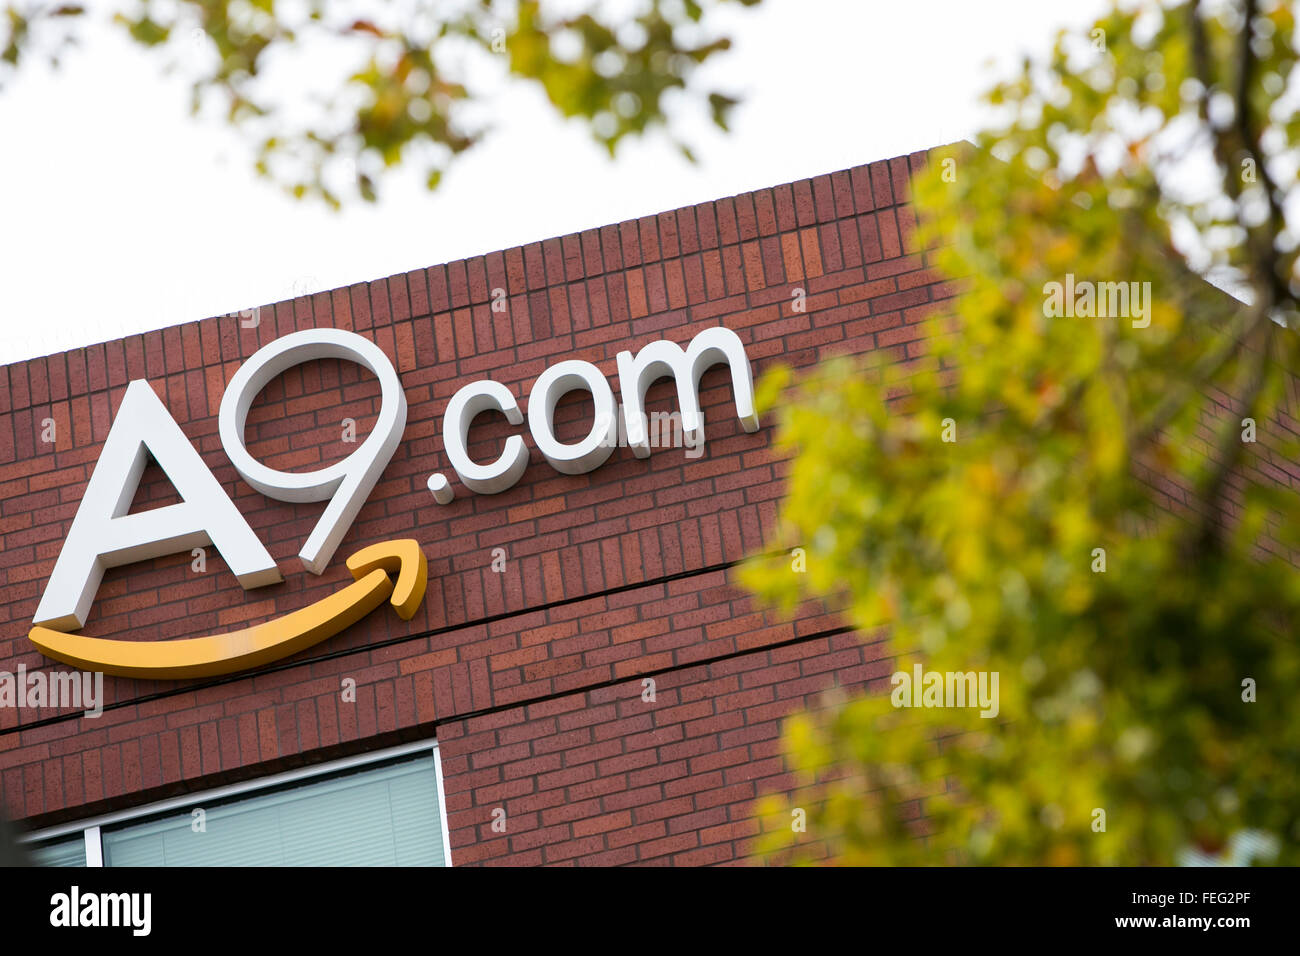 Un logo segno al di fuori della sede di A9.com, una controllata di Amazon.com a Palo Alto, in California, il 24 gennaio 2016. Foto Stock